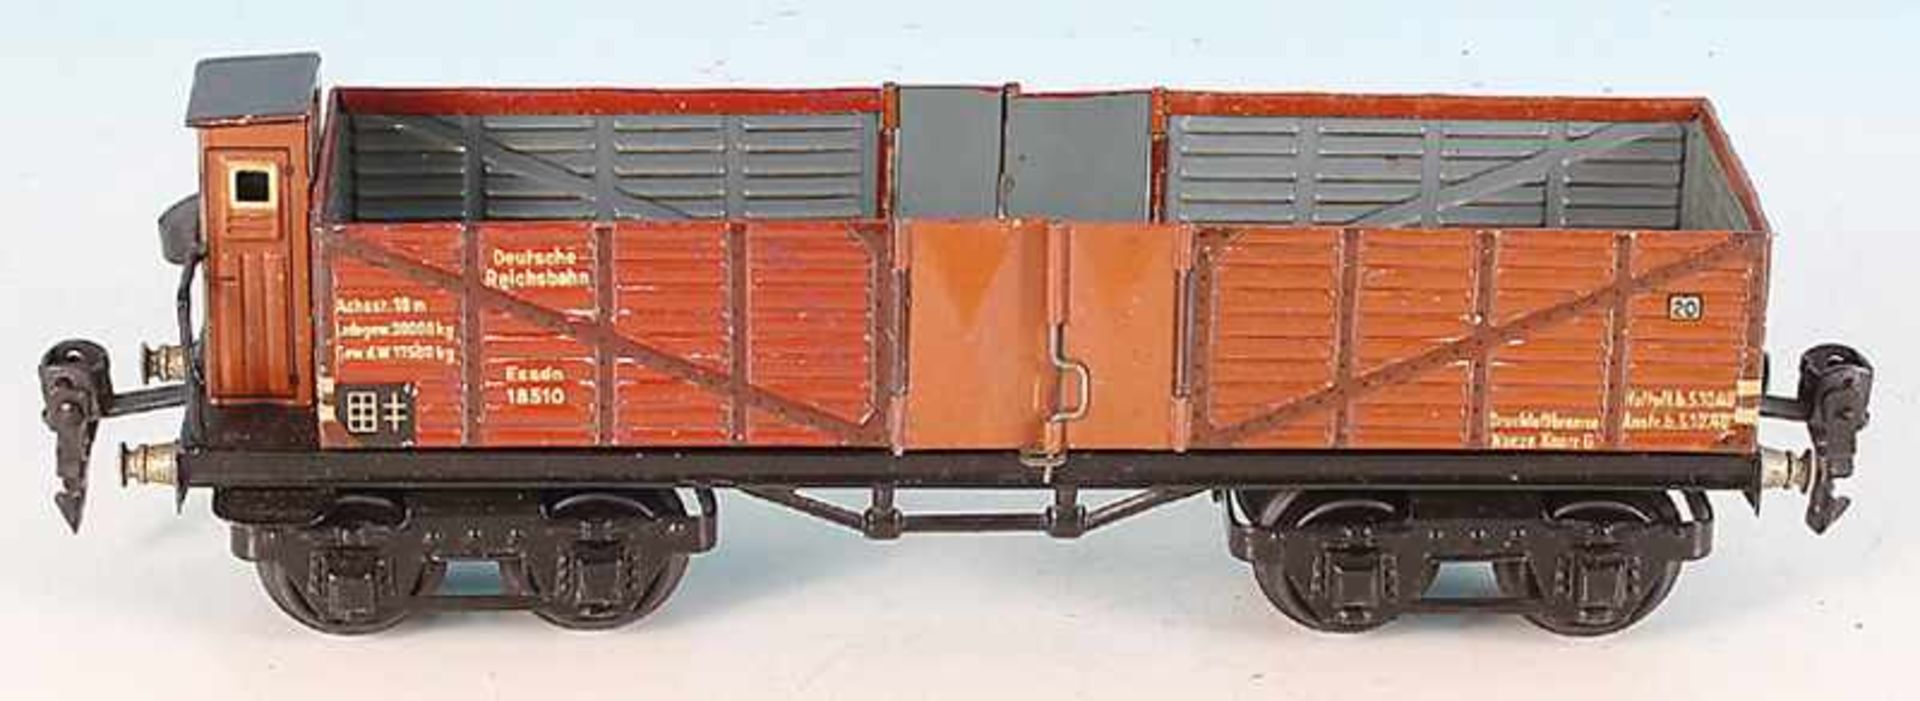 MARKLIN Hochbordwagen 1851/0